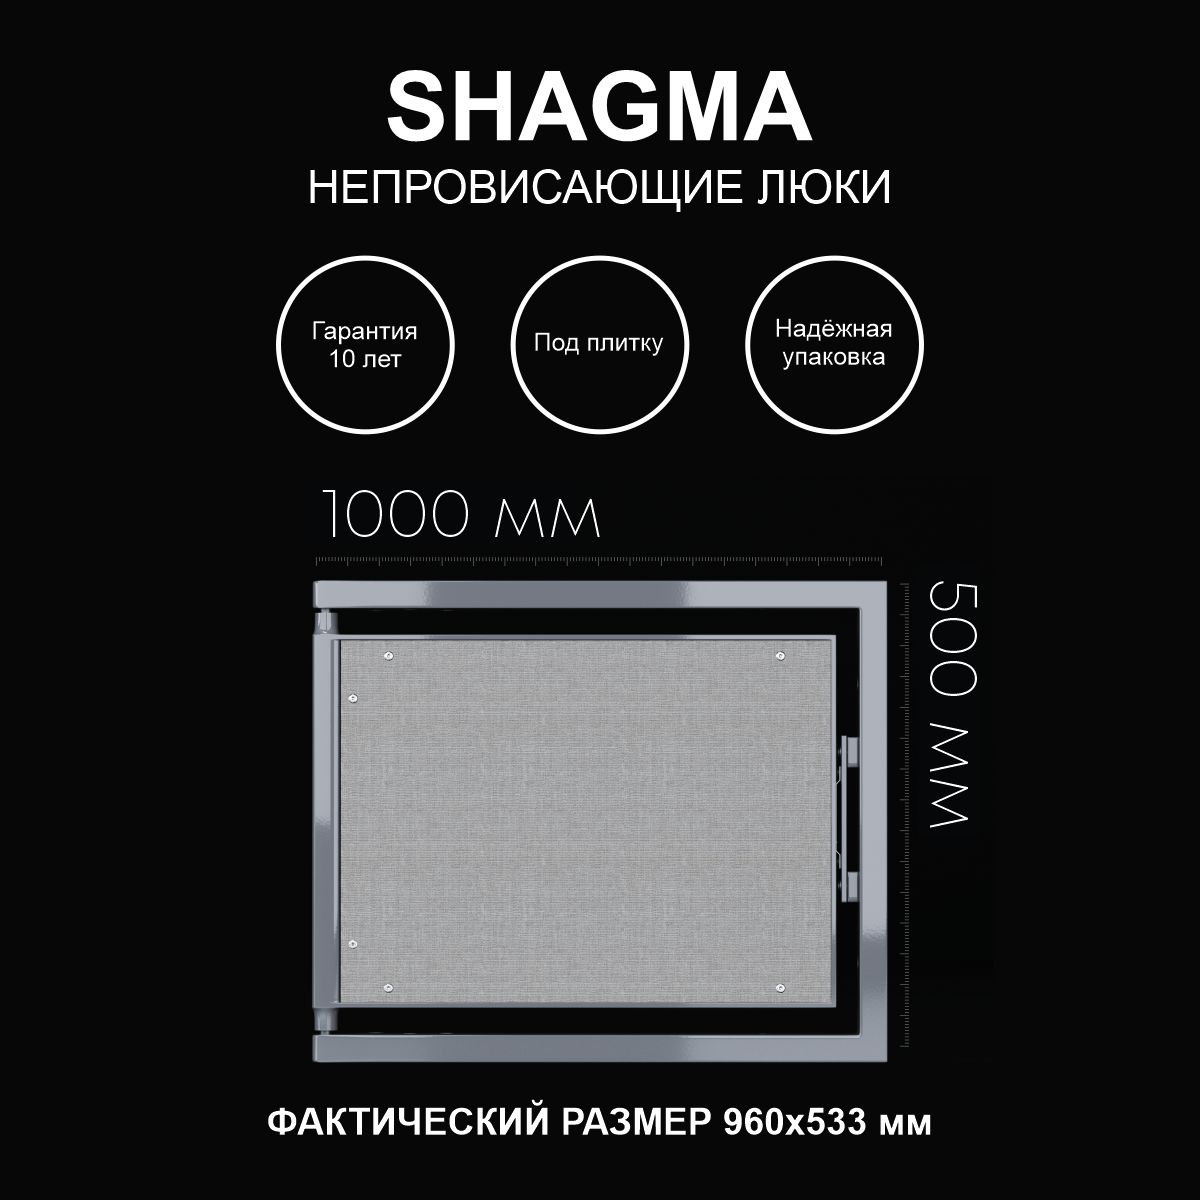 Люк ревизионный под плитку SHAGMA 1000х500 одностворчатый настенный факт 960х533